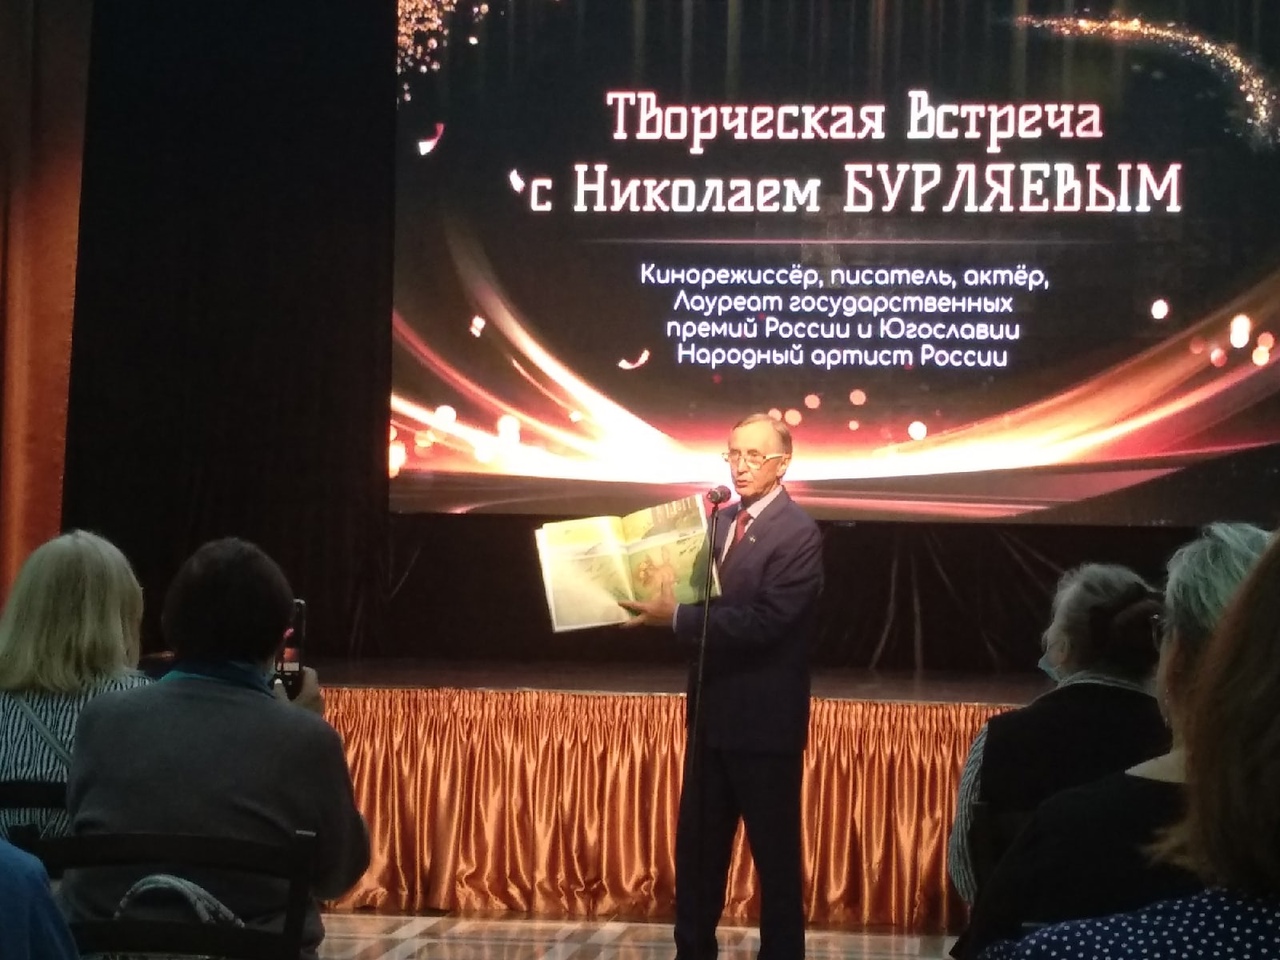 Известный кинематографист подарил киноцентру во Владимире 300 фильмов из архива «Золотого витязя» и рассказал о творческих планах.